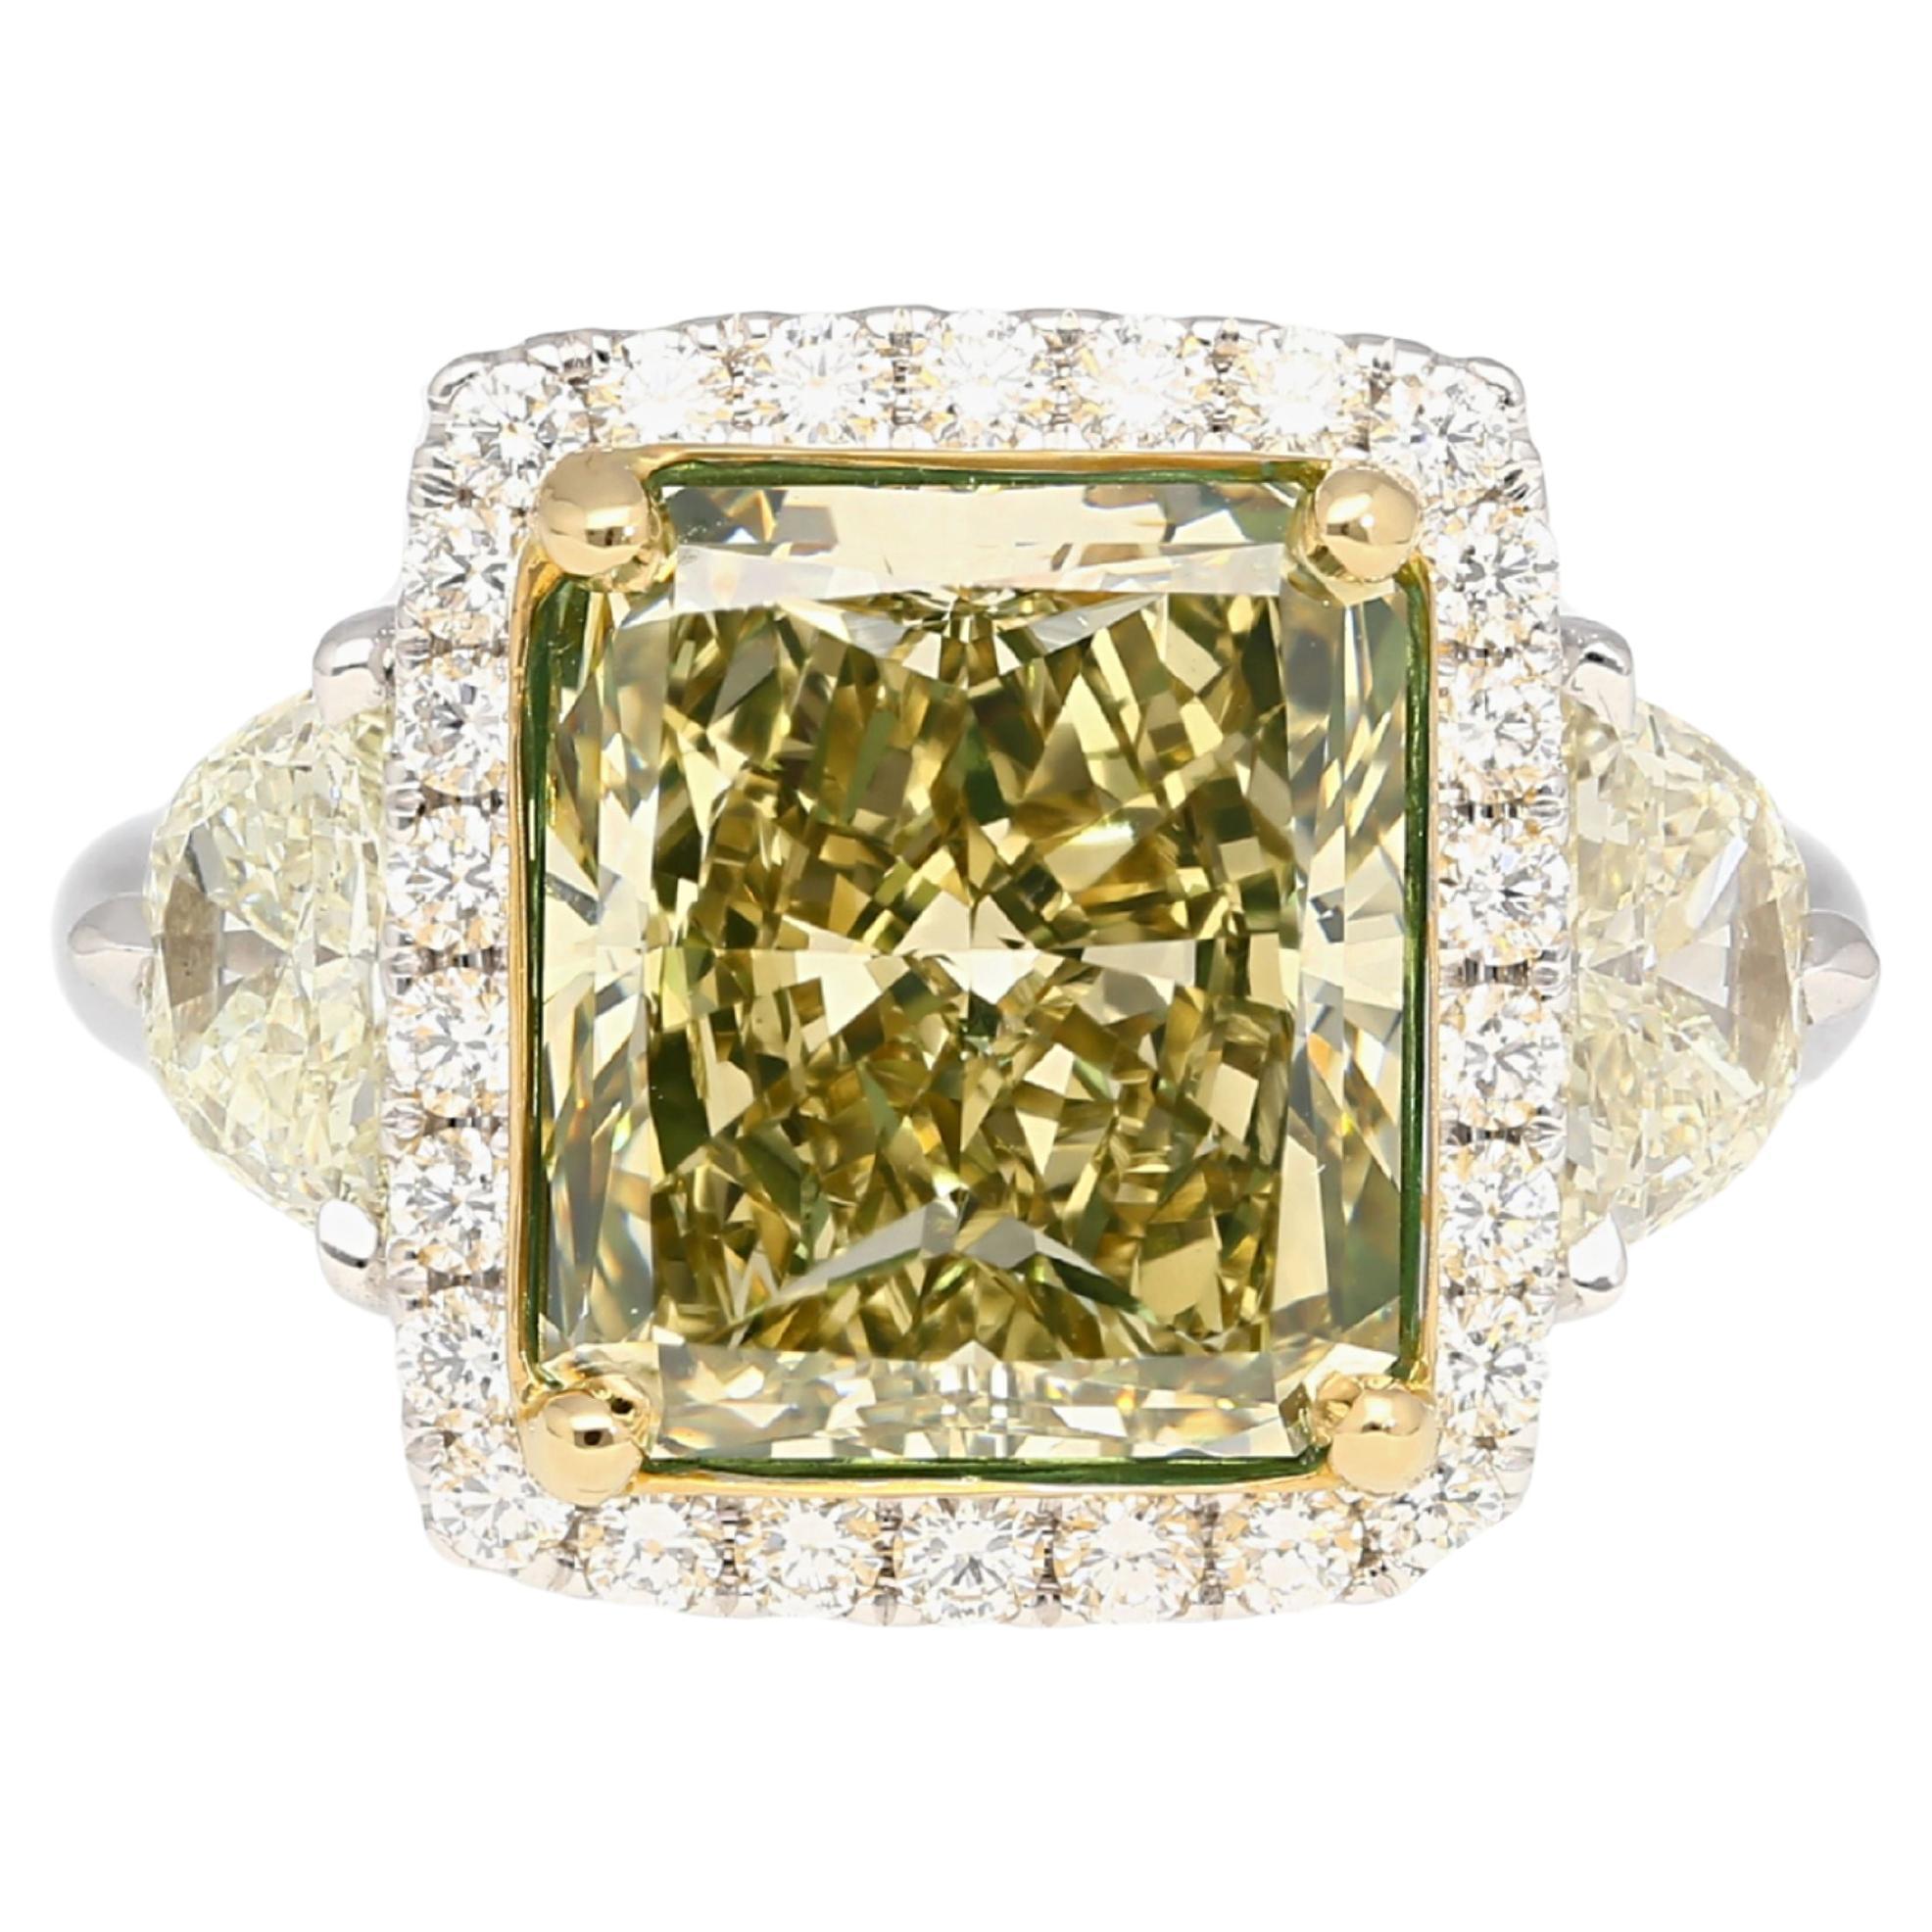 Bague en diamant certifié GIA de 6,07 carats, taille radiant, de couleur jaune vert brunâtre